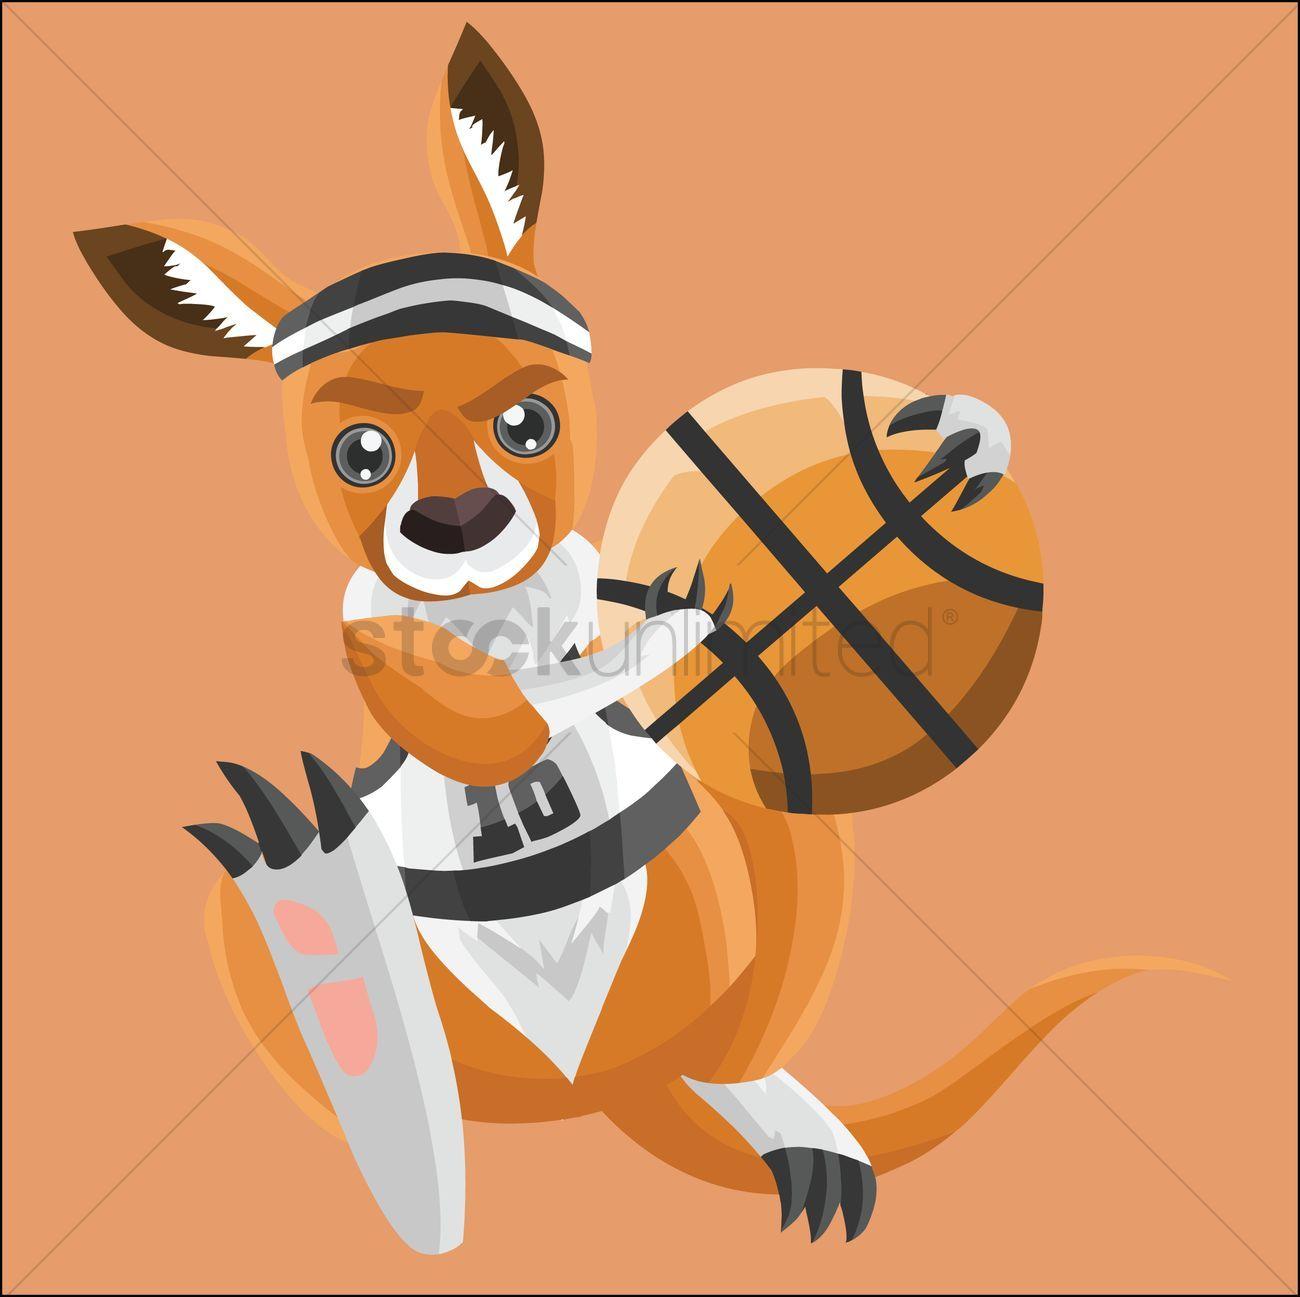 Kangaroos Basketball Logo - Kangaroo as a basketball player on peach background Vector Image ...